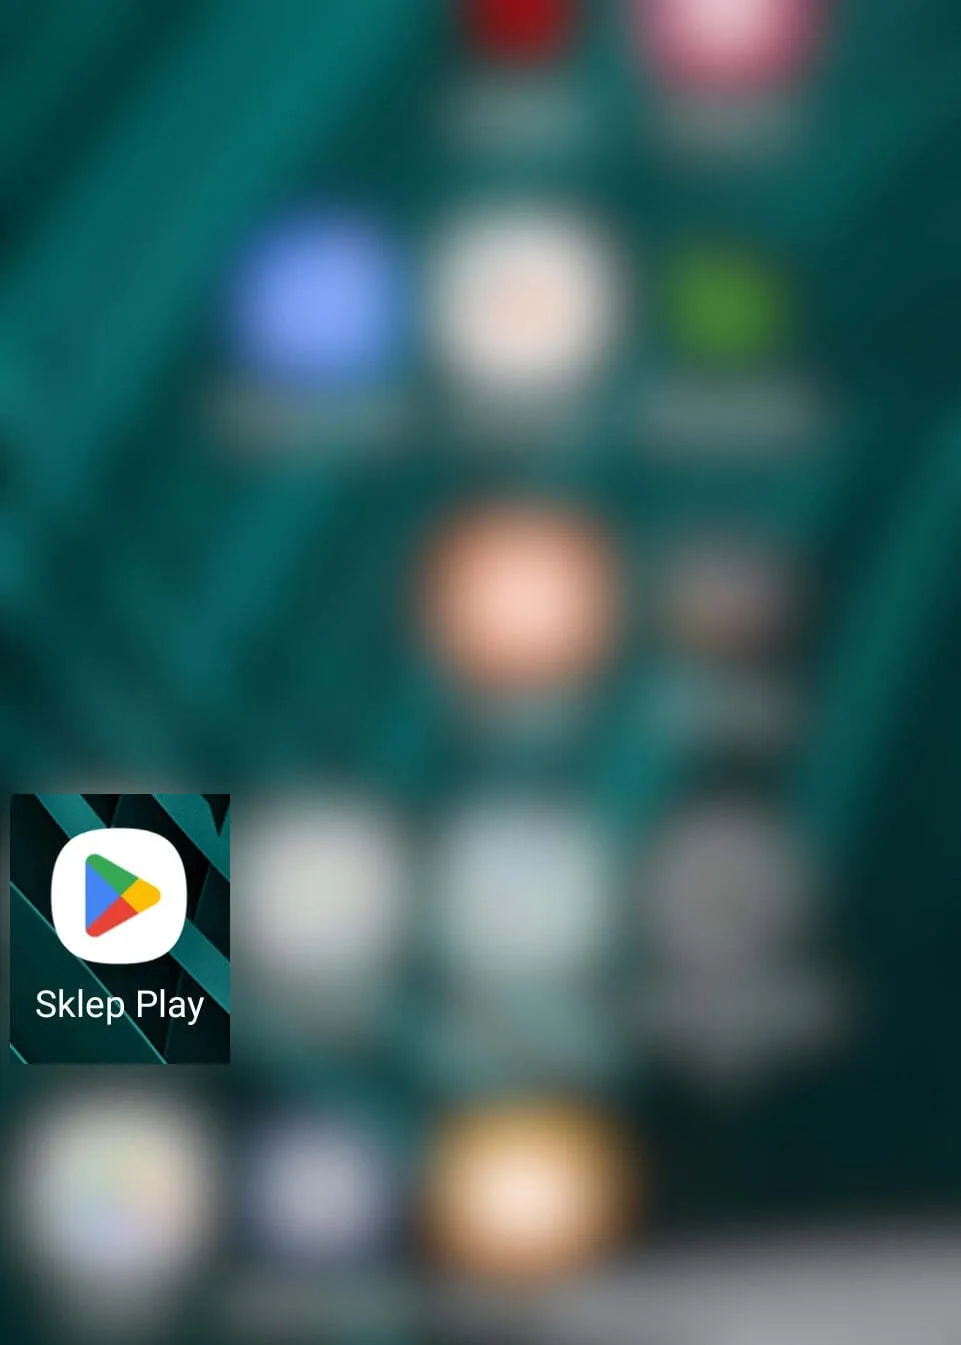 Znajdź Sklep Play na ekranie głównym w systemie Android